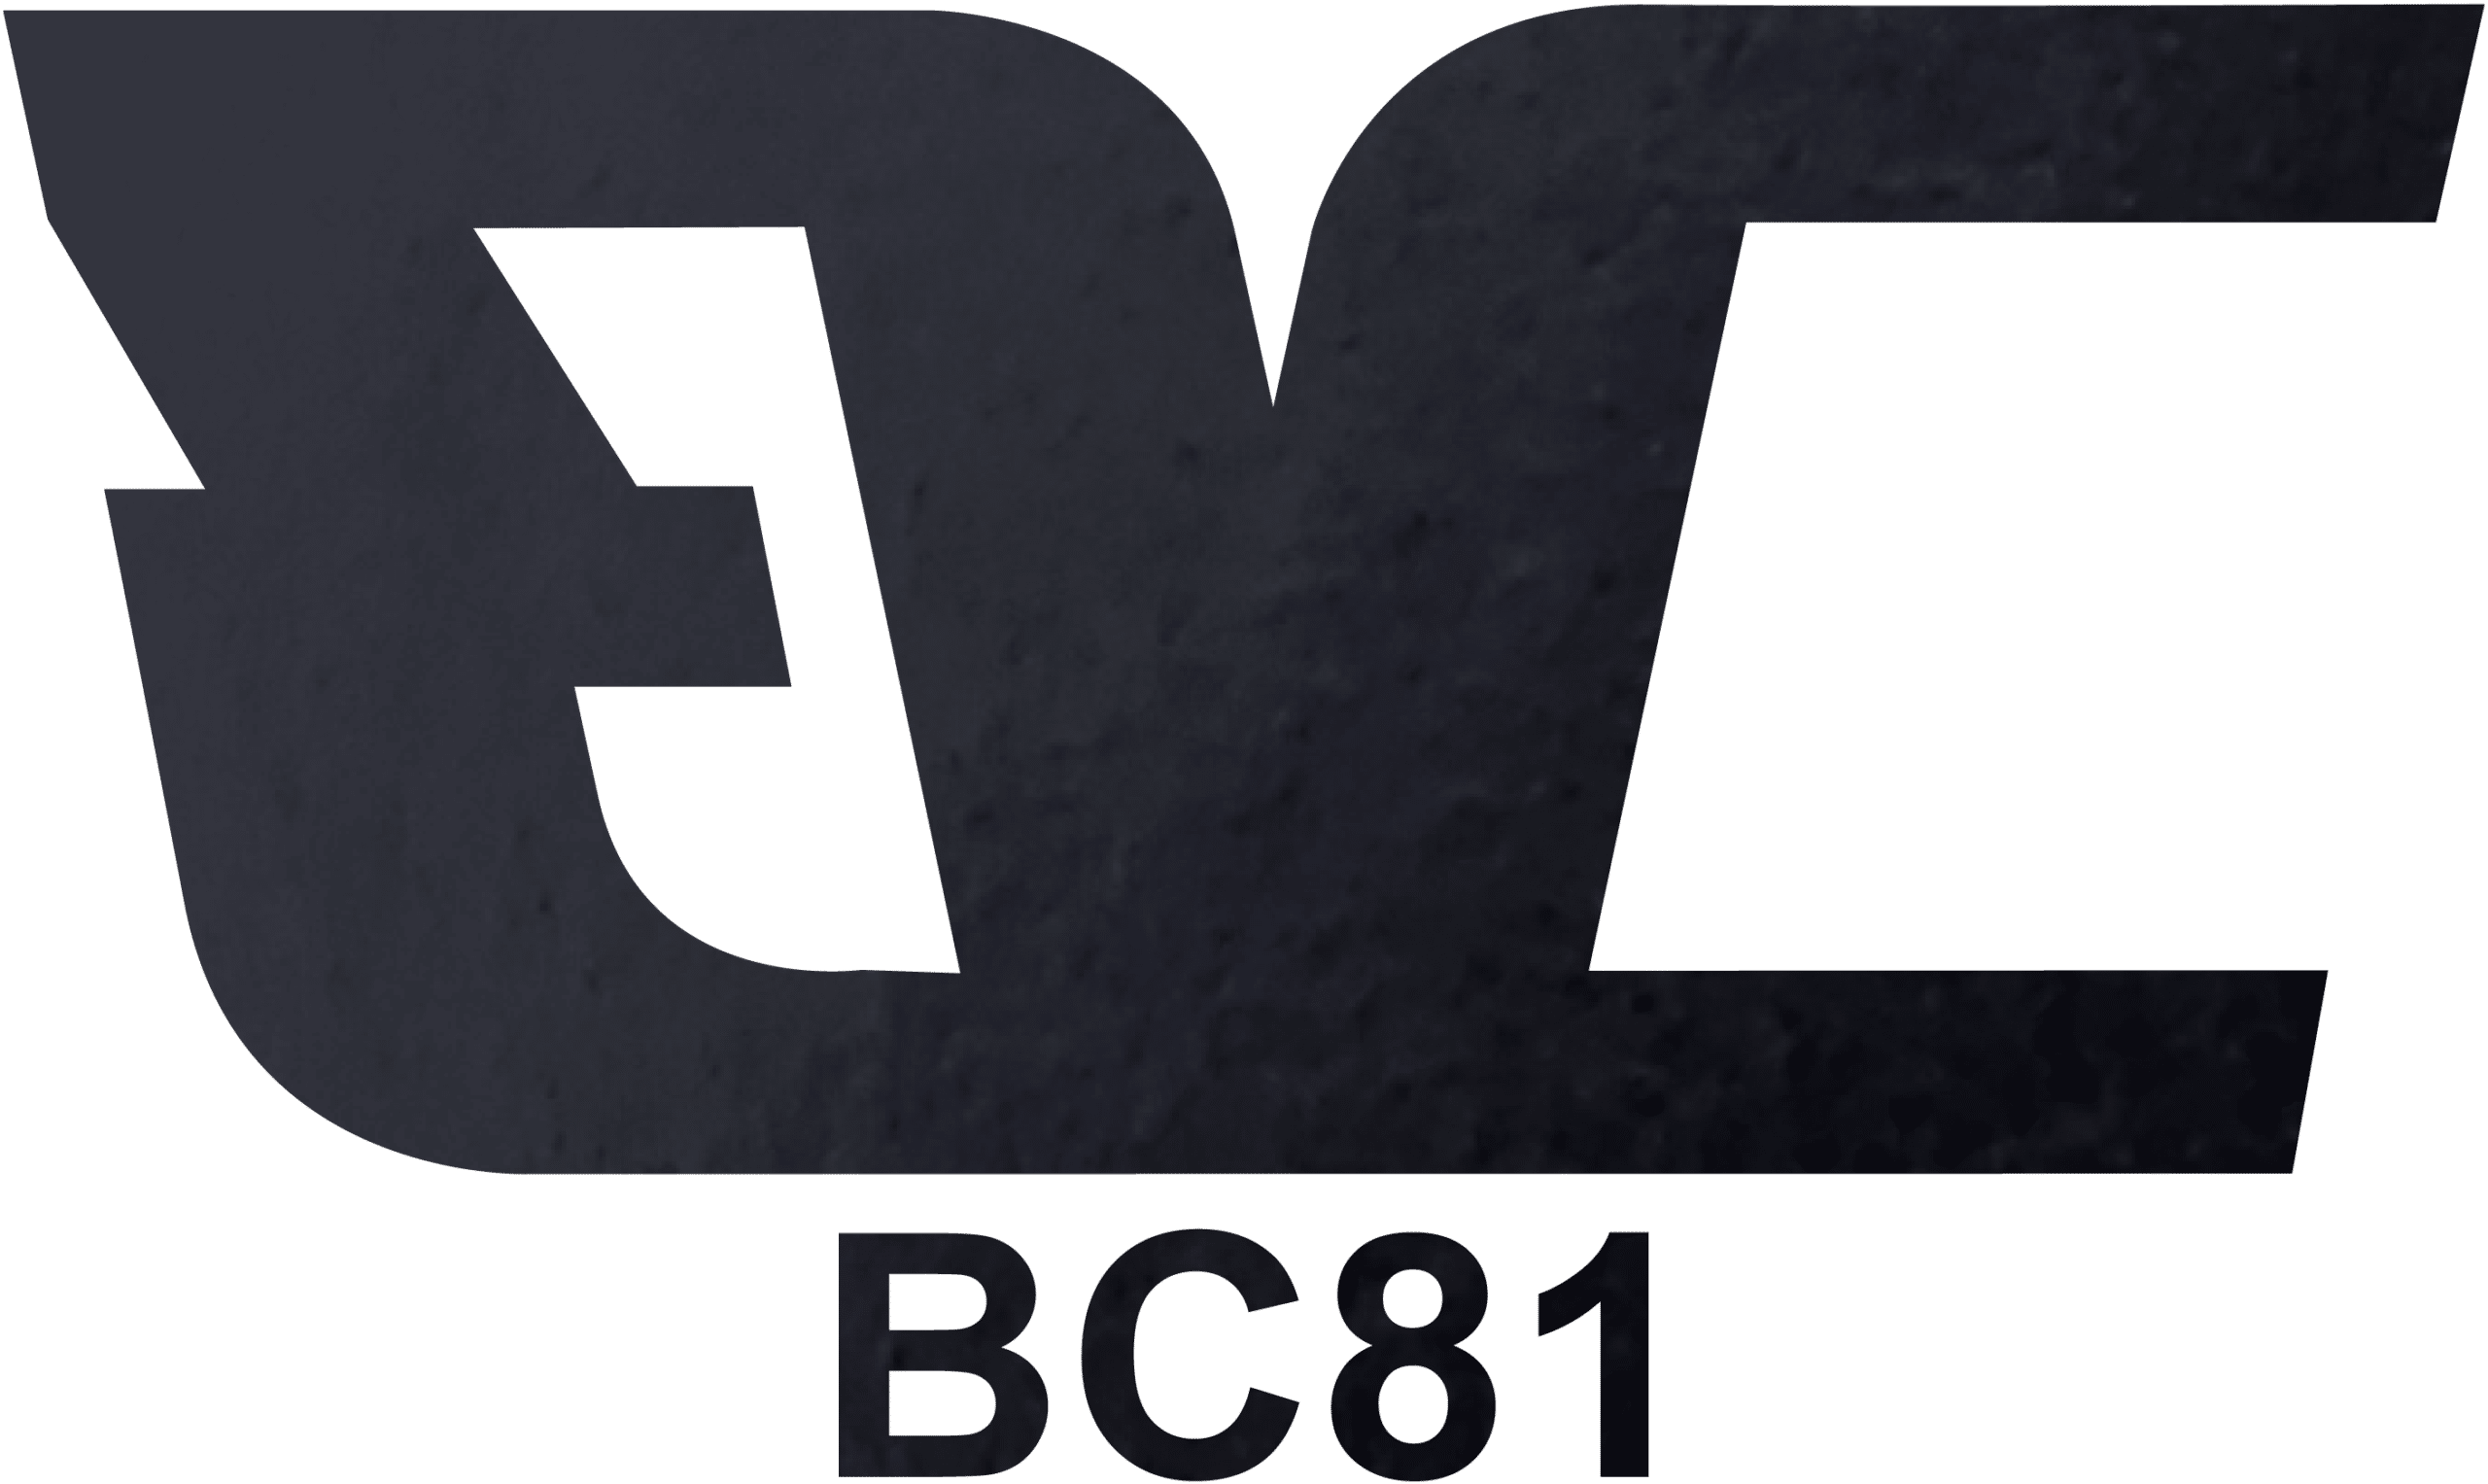 Foil Stamping - BC81 - Transparent Foil Stamping on Black